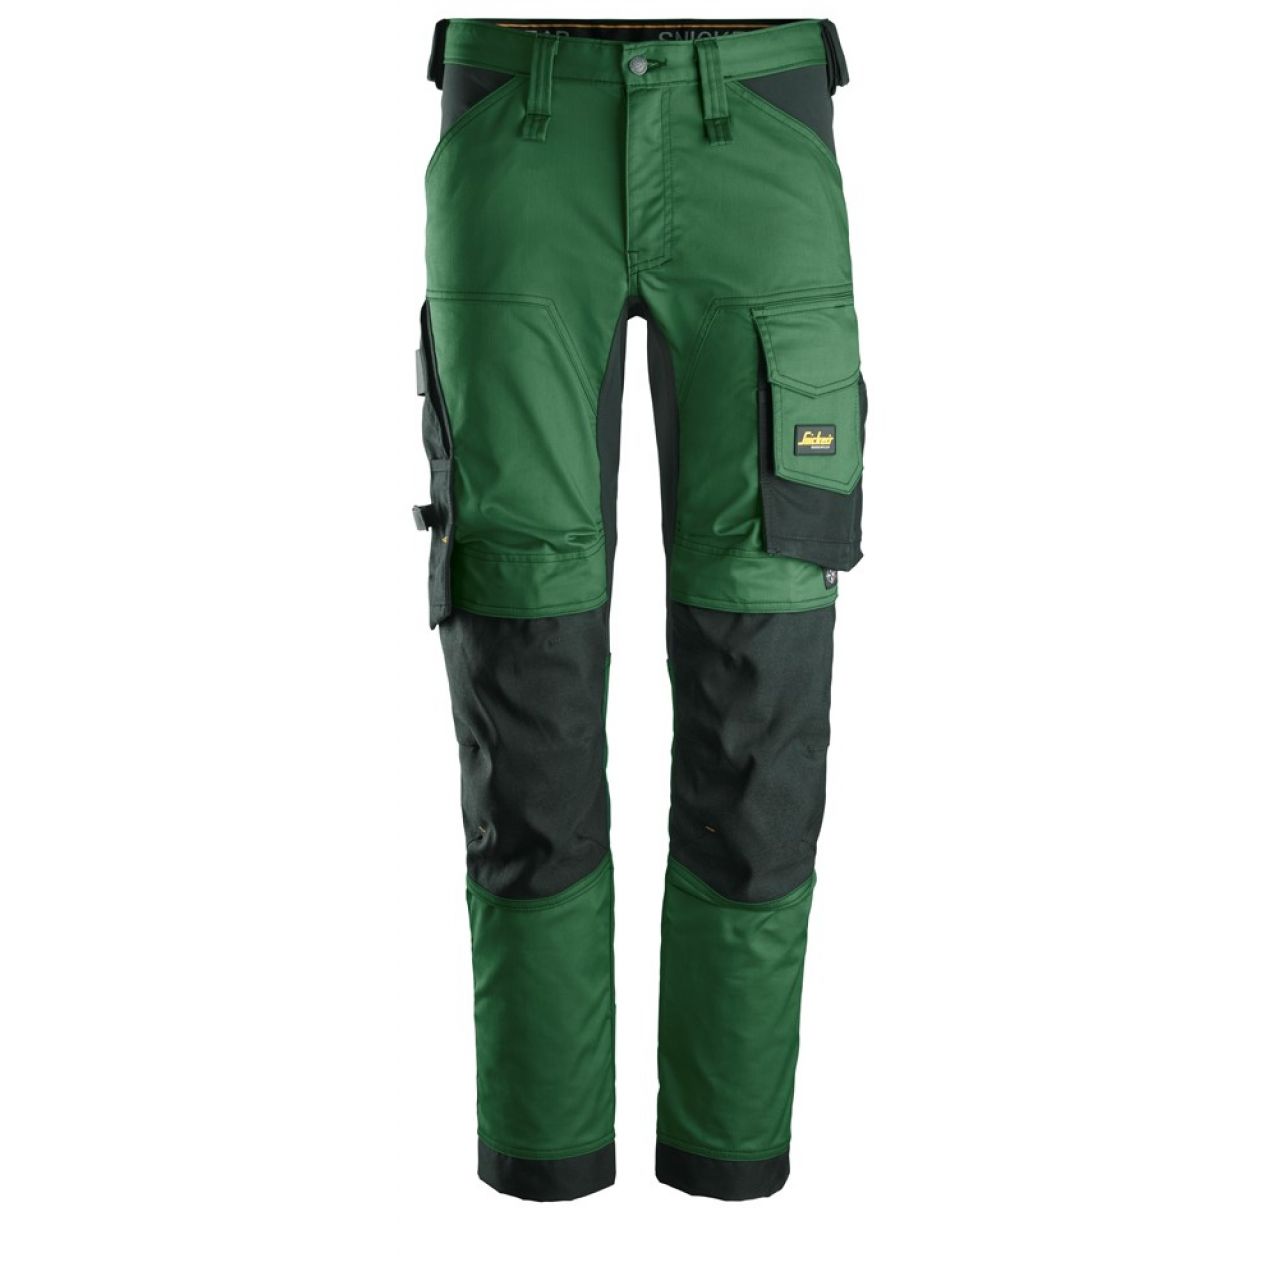 6341 Pantalones largos de trabajo elásticos AllroundWork verde forestal-negro talla 254